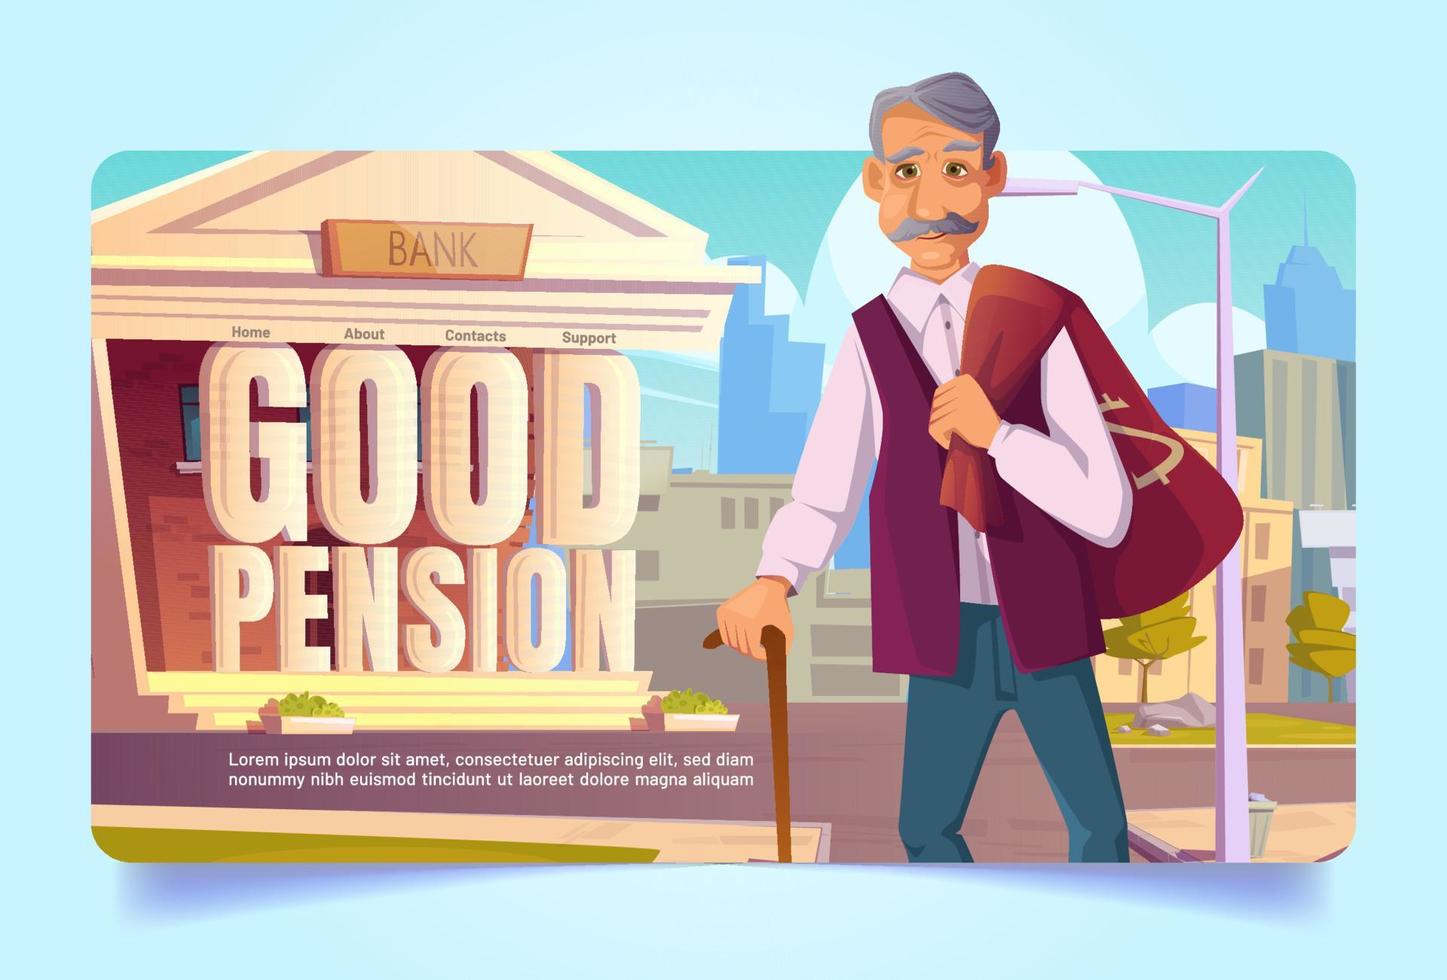 Pension fund savings cartoon landing page, savings vector